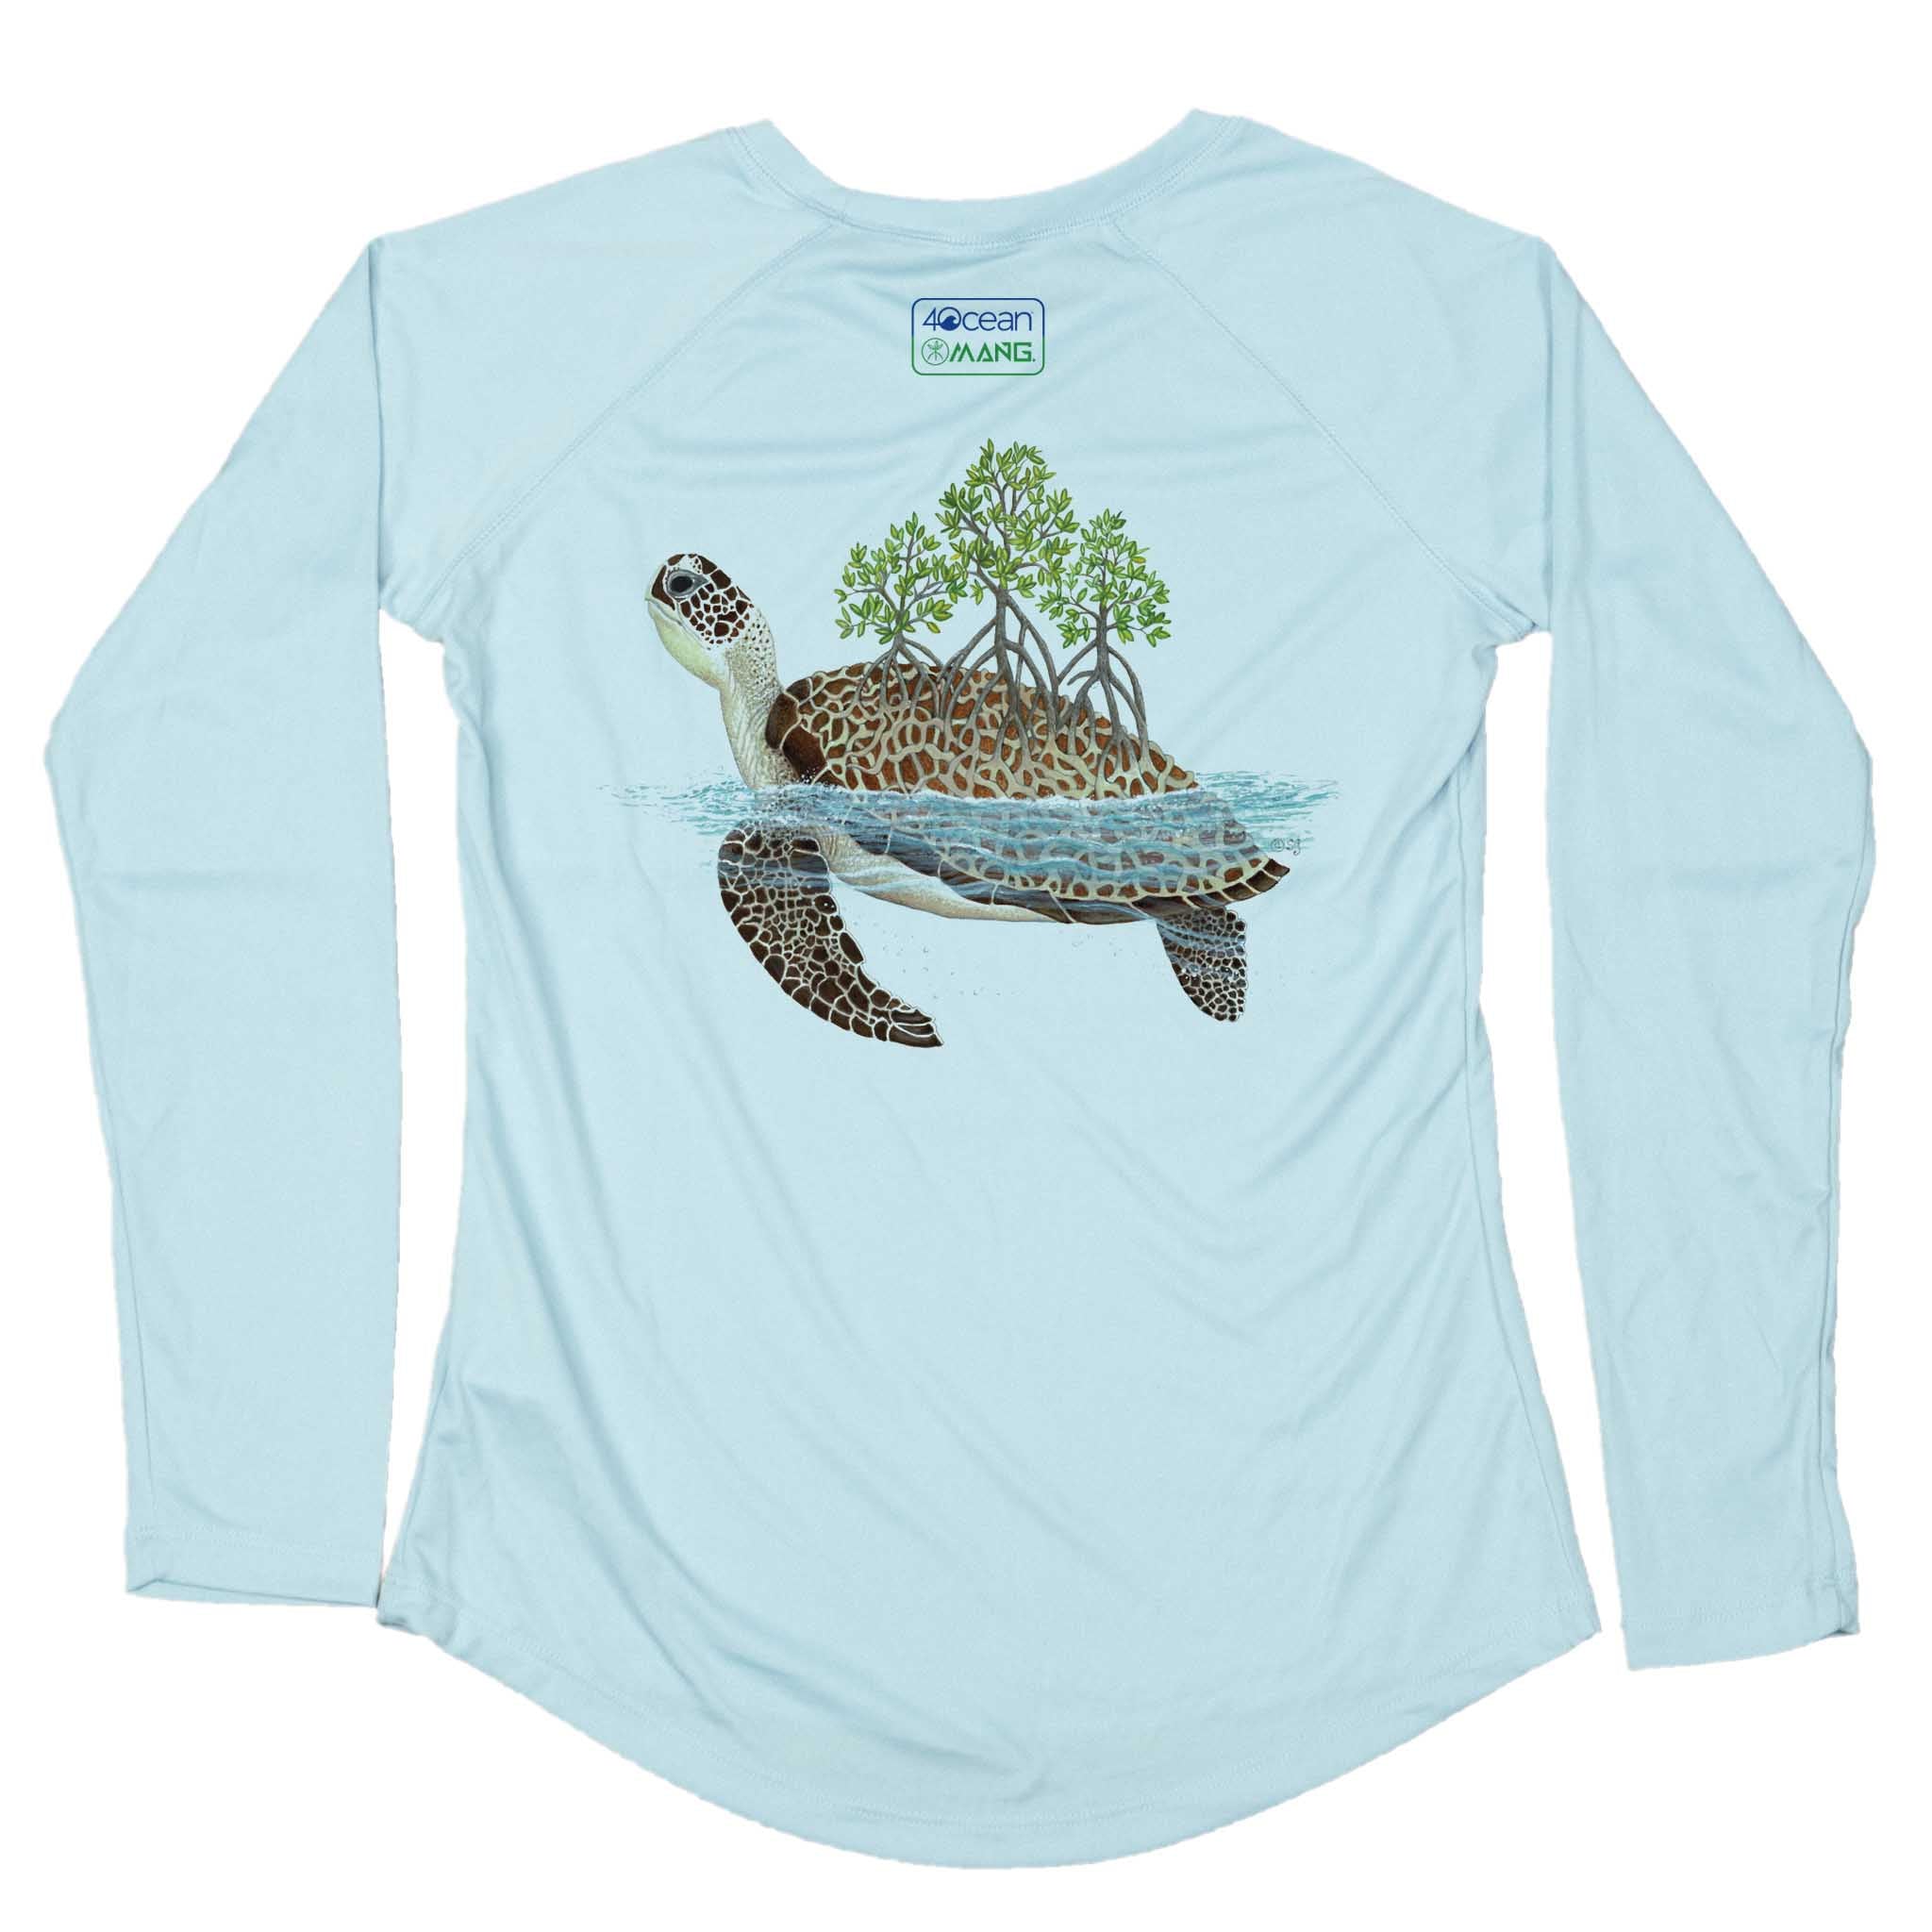 4ocean Turtle Eco LS - Women's